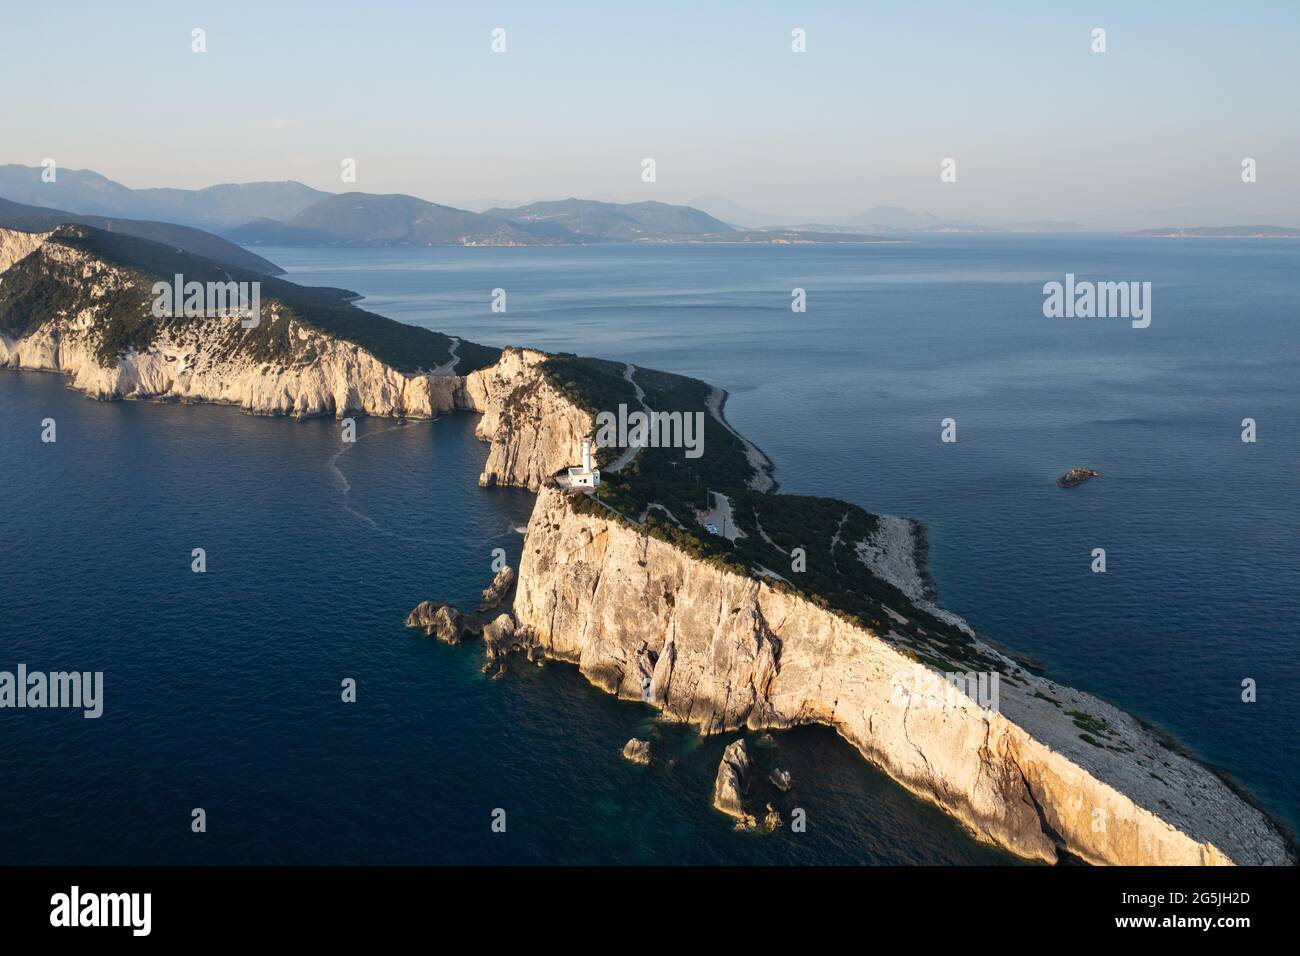 Vista aerea su un bellissimo paesaggio con il faro bianco sull'isola greca di Lefkada Foto Stock